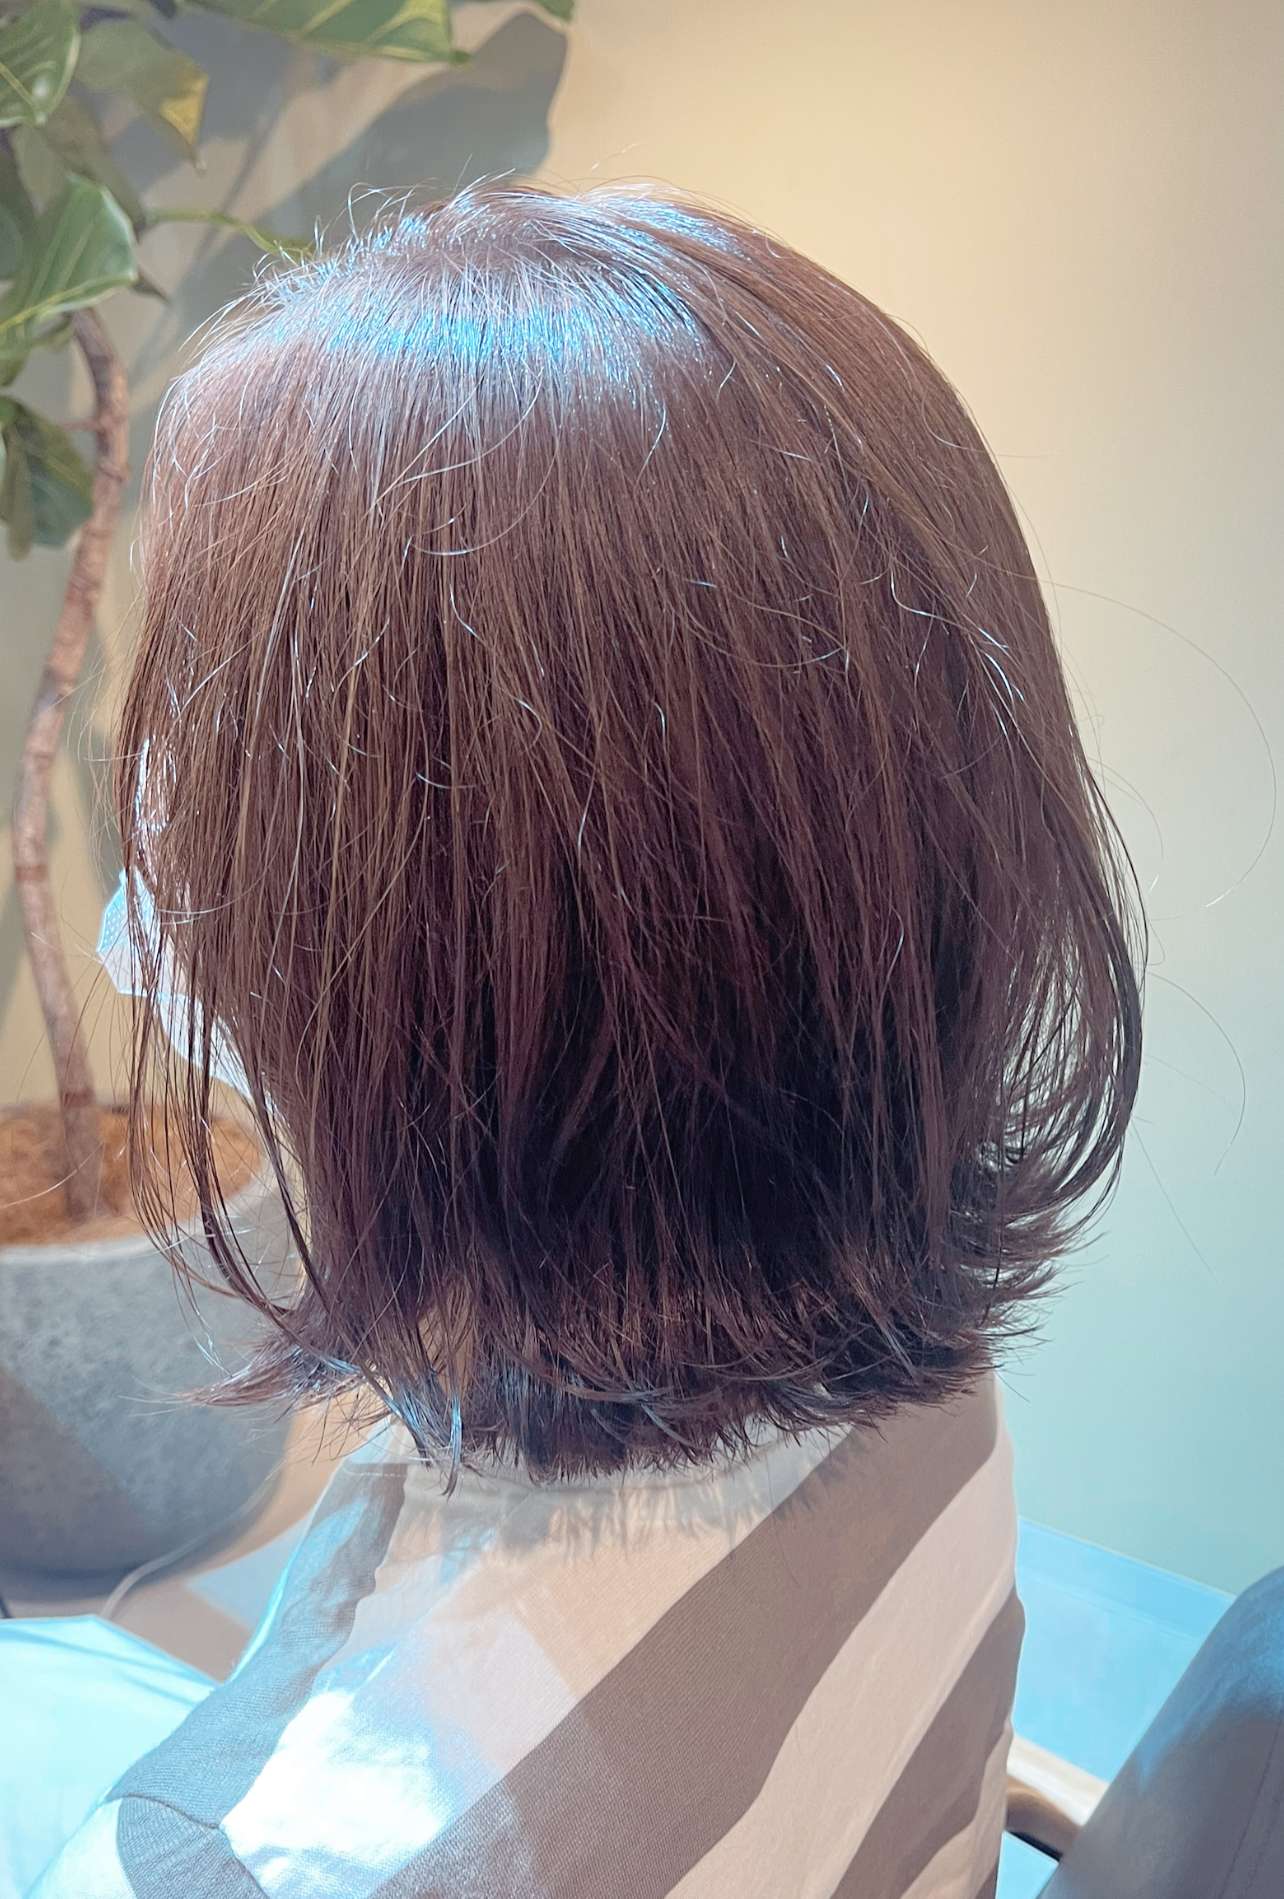 大阪市住吉区で自分に似合う髪型を見つけれる美容室ーLIAM hair　Relaxーリアムヘアーリラックス